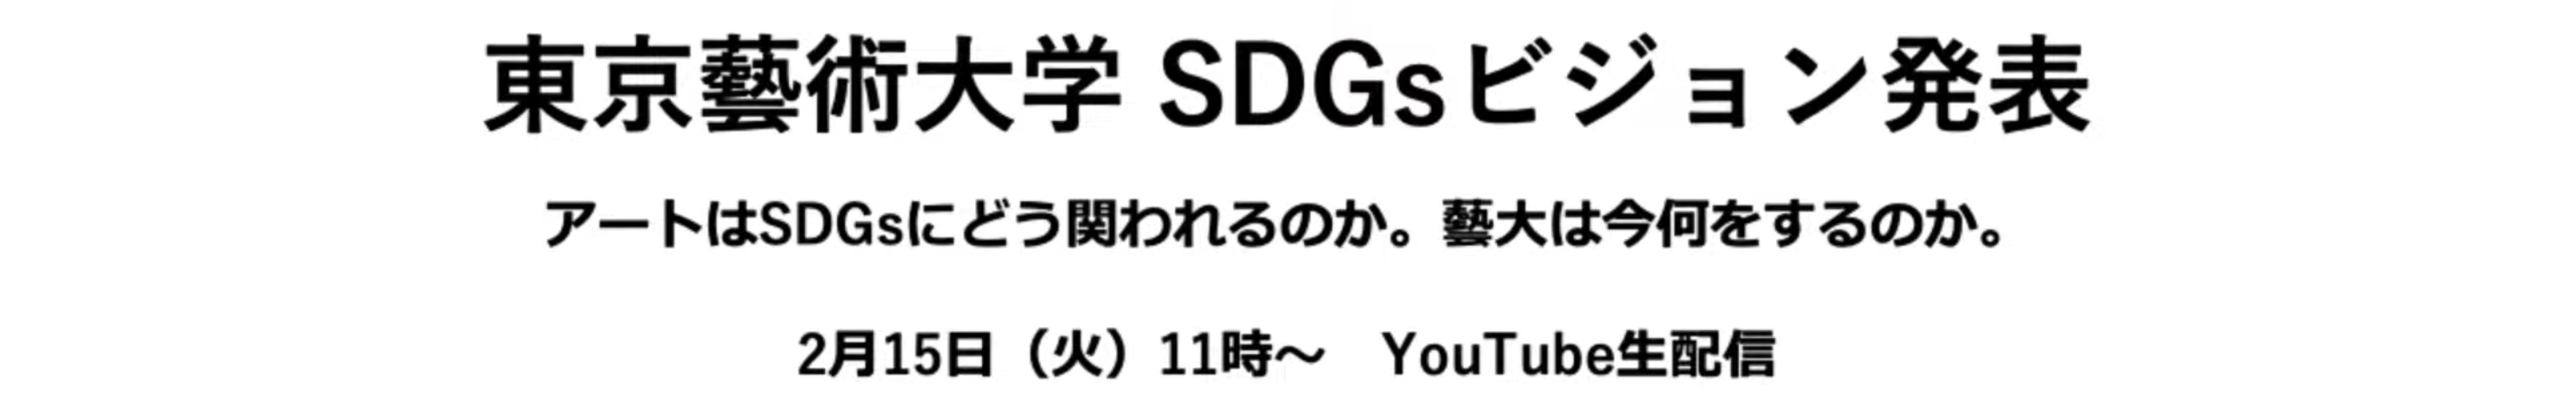 東京藝術大学SDGsビジョン発表及び無料公開ウェビナー